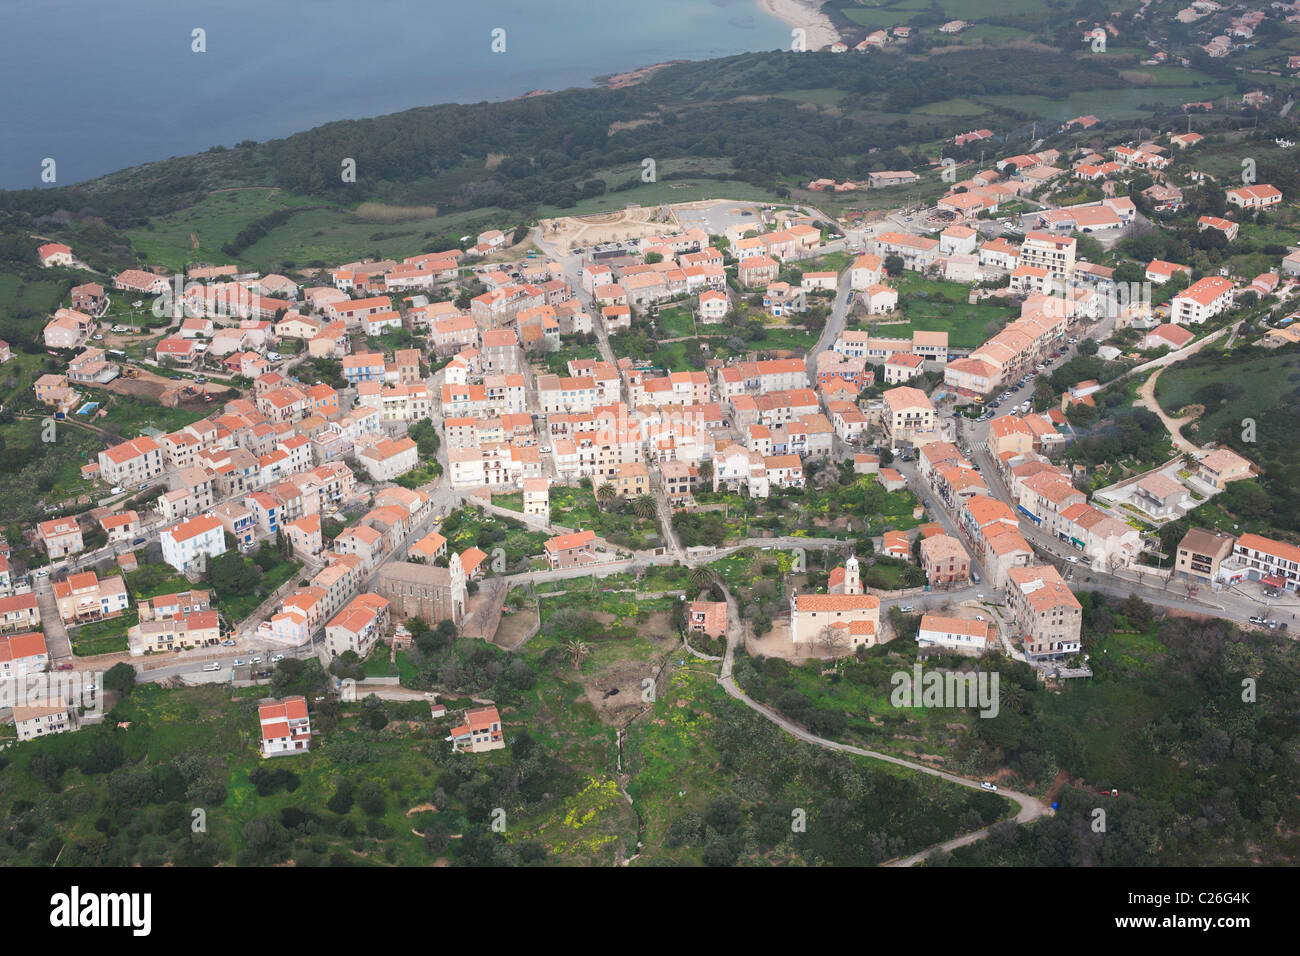 VUE AÉRIENNE.Village perché surplombant la mer Méditerranée.Cargèse, Corse, France. Banque D'Images